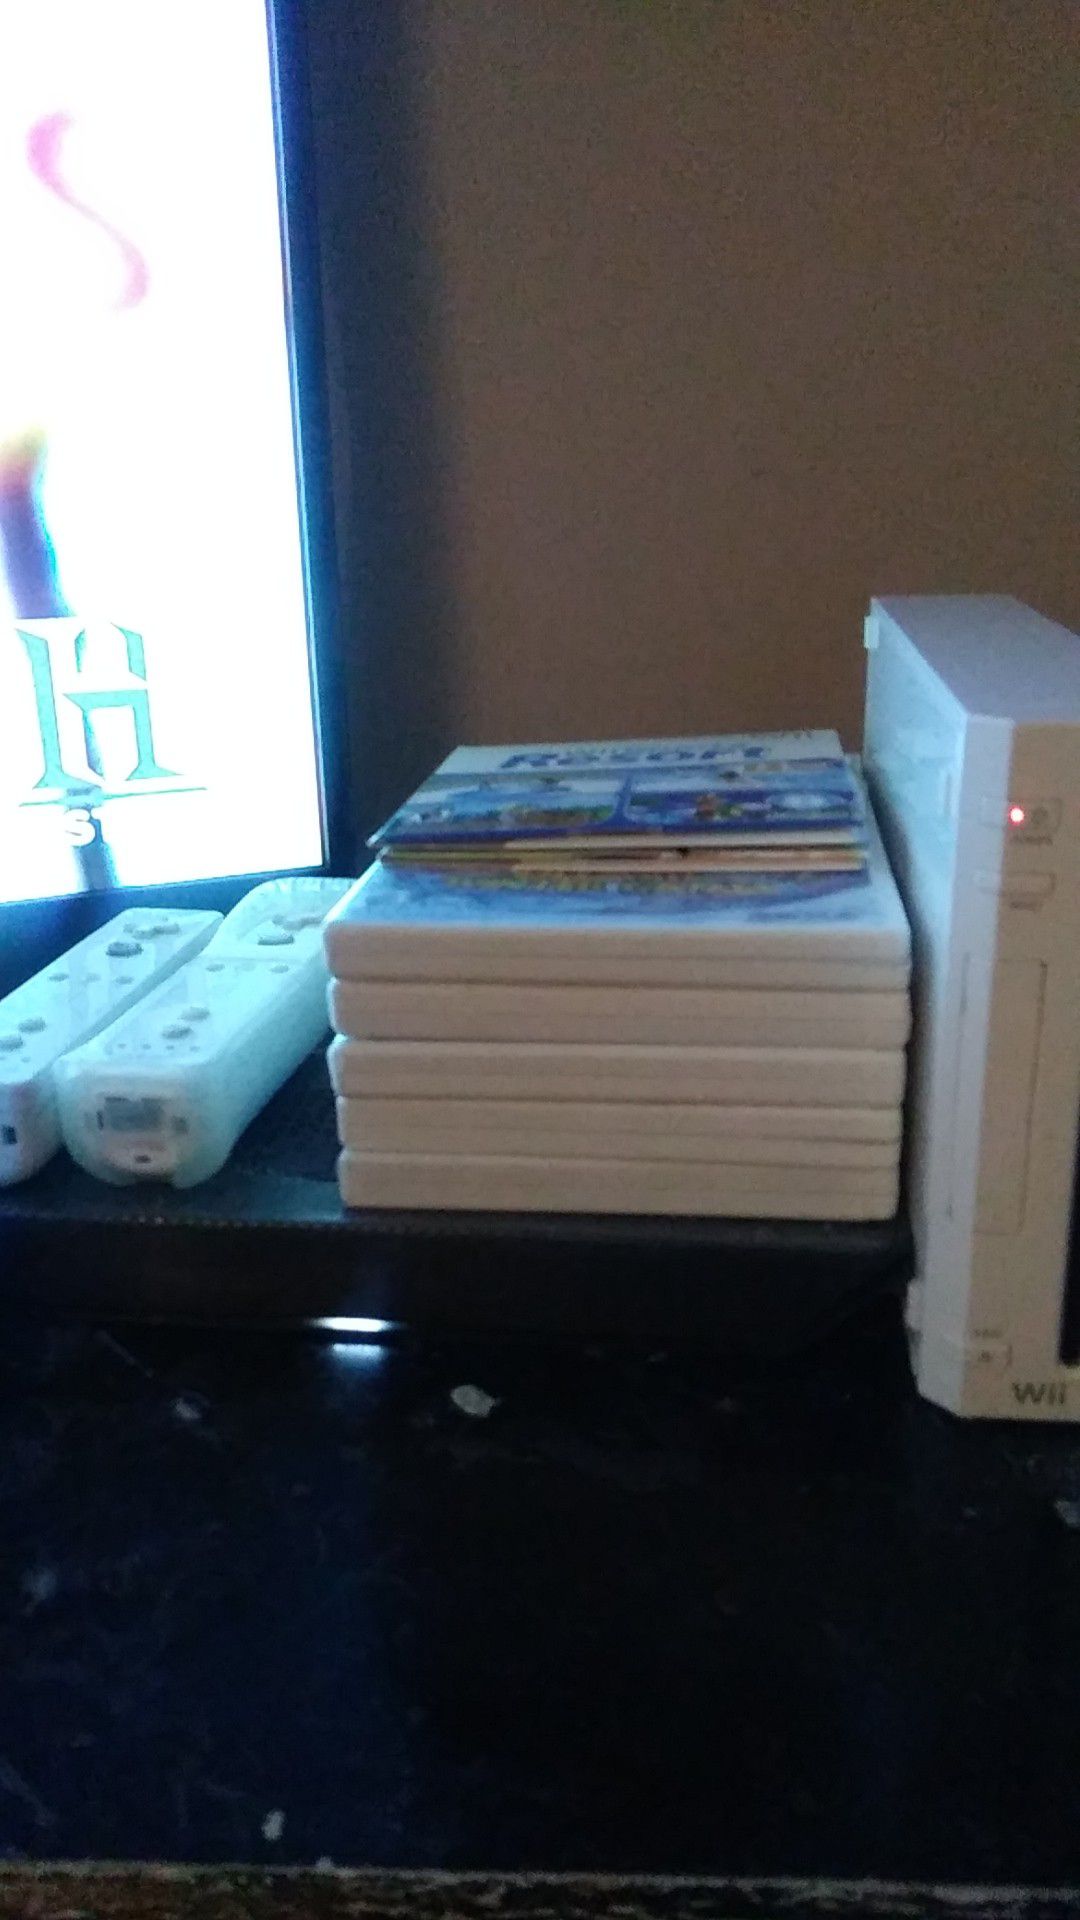 Nintendo Wii white